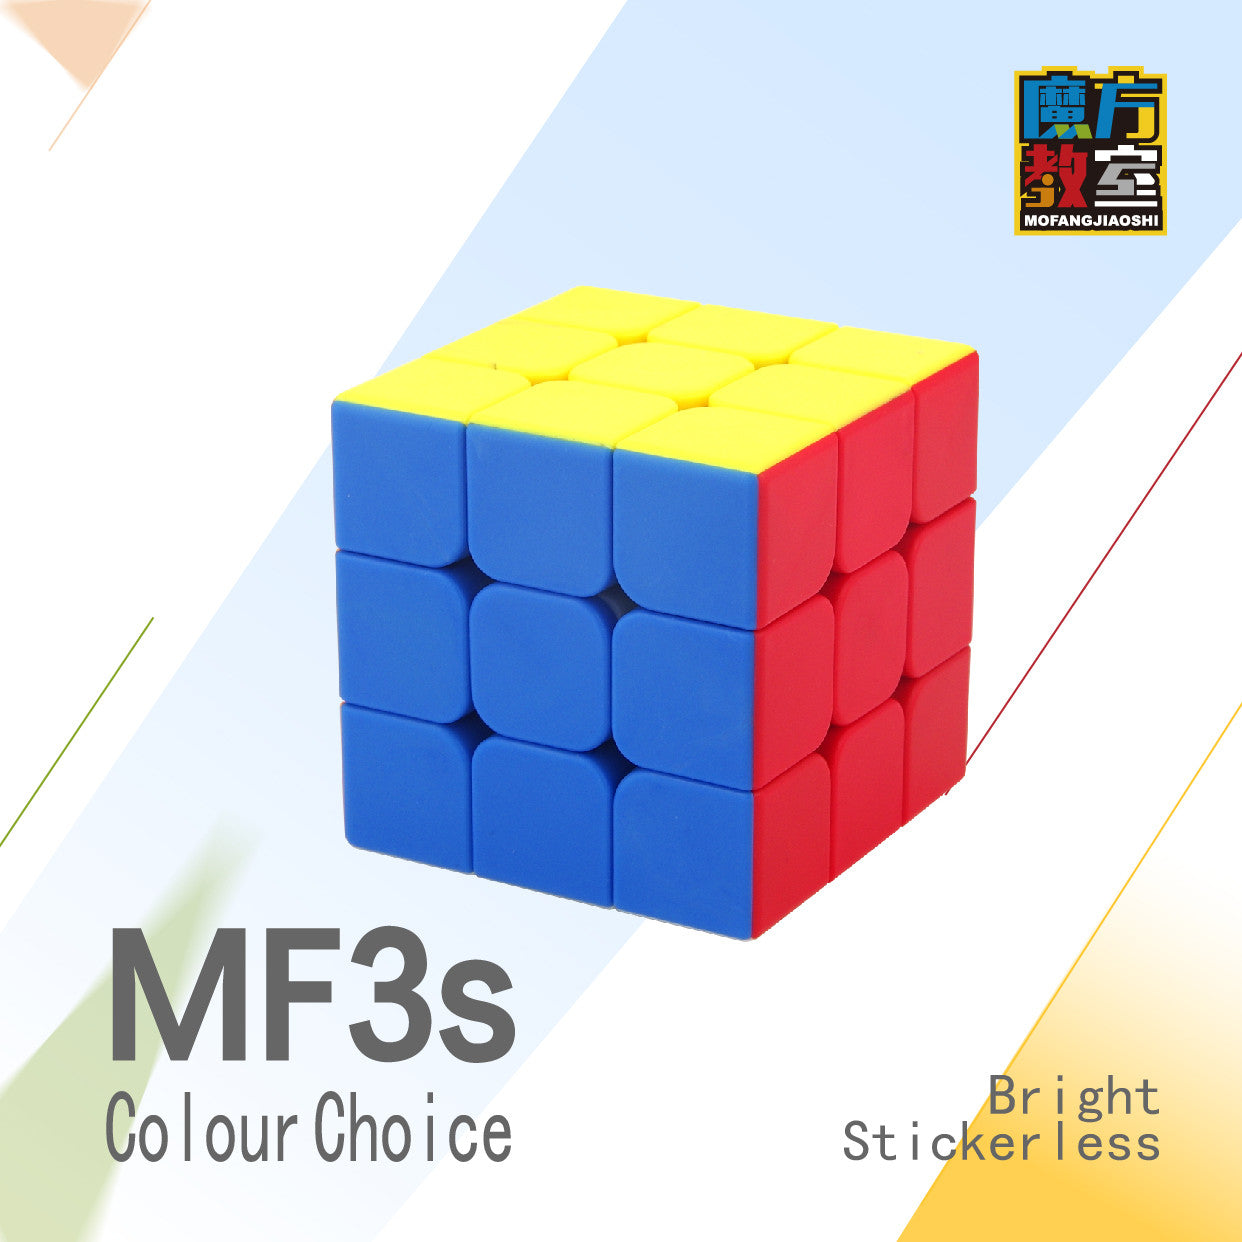 D-FantiX Mofang Jiaoshi Meilong 3x3 Speed Cube (Colorful)